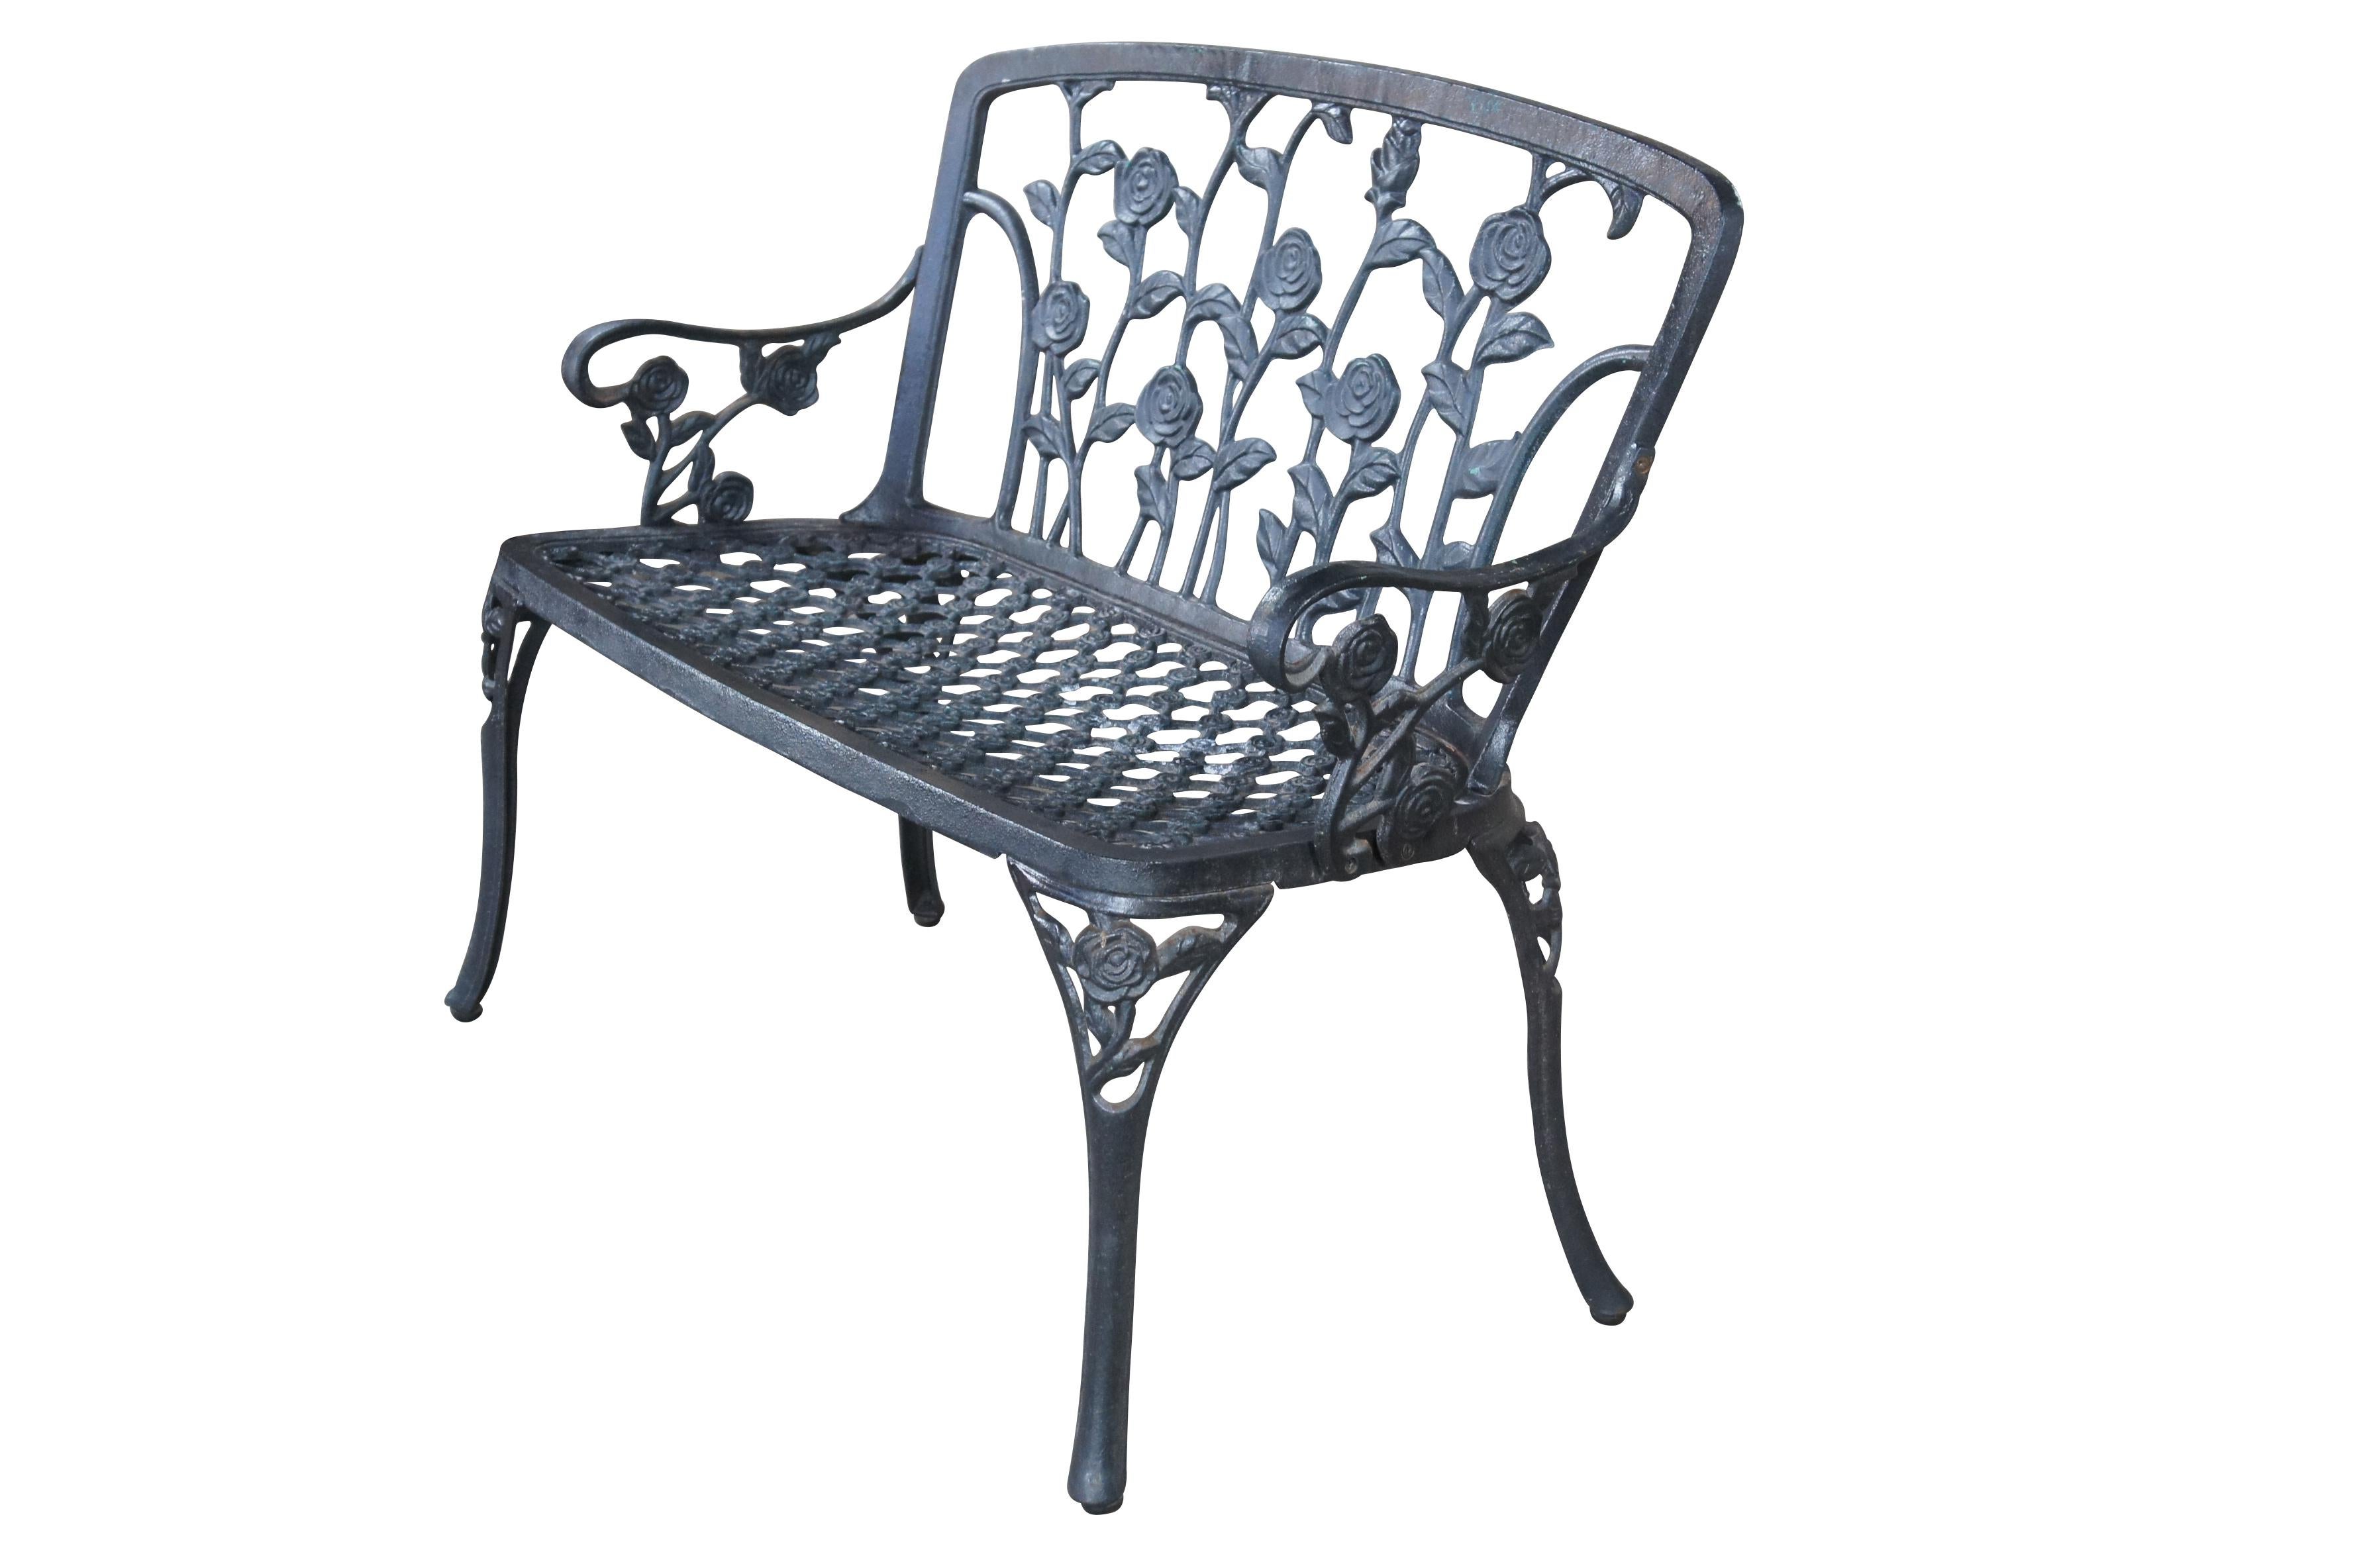 (2 verfügbar) Gartenbank aus Metall im Vintage-Stil mit Kletterrosen an der Rückenlehne.  Mit verschnörkelten Armen mit Rosen und einem Sitz mit Gitterrosette. 

Abmessungen:
42